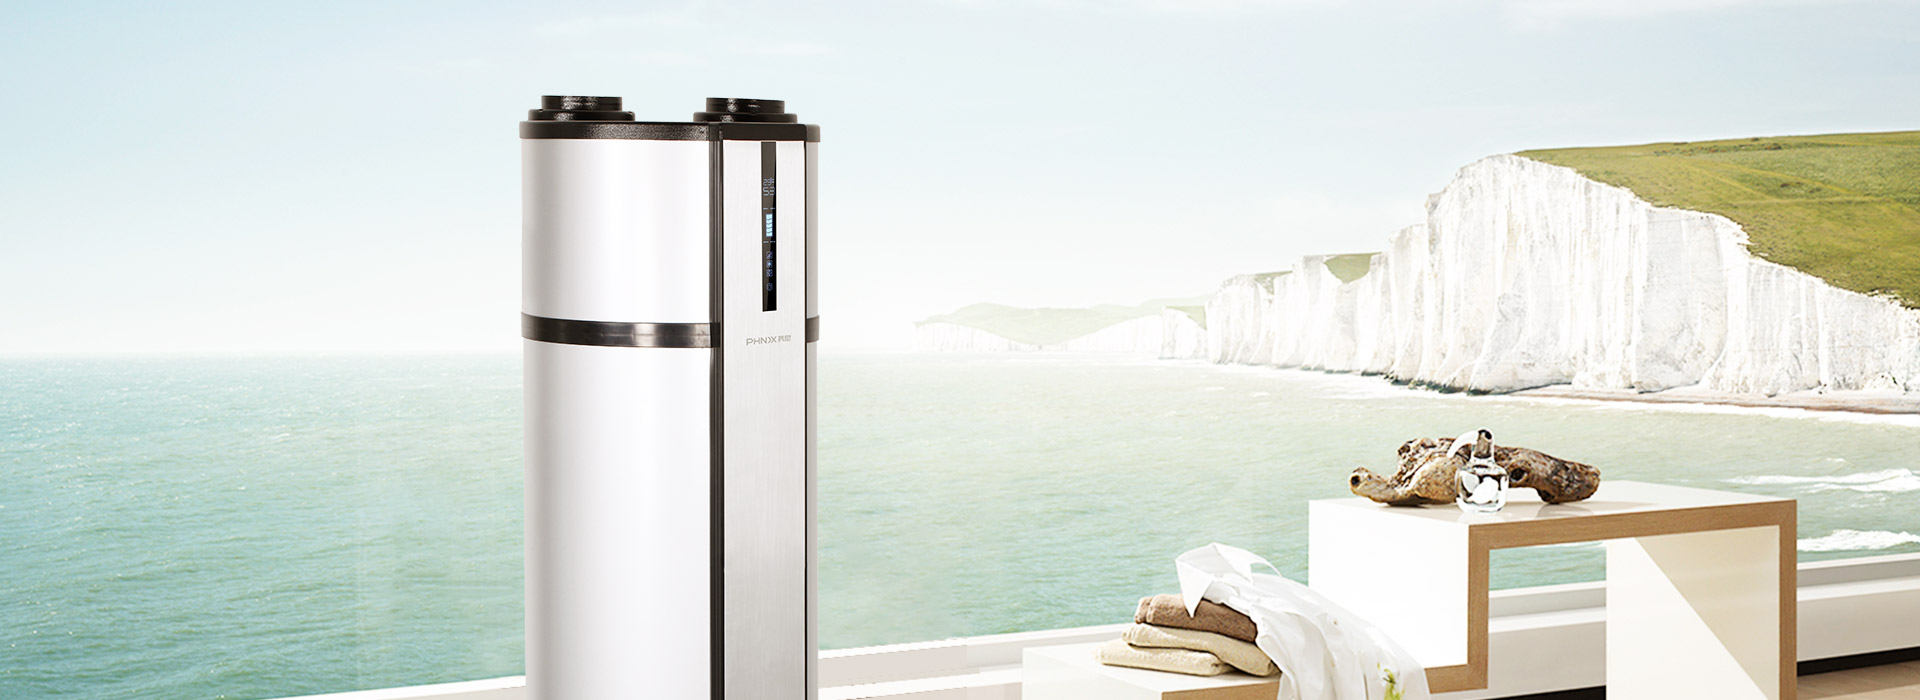 芬尼空气能热水器豪华型200L恒温舒适